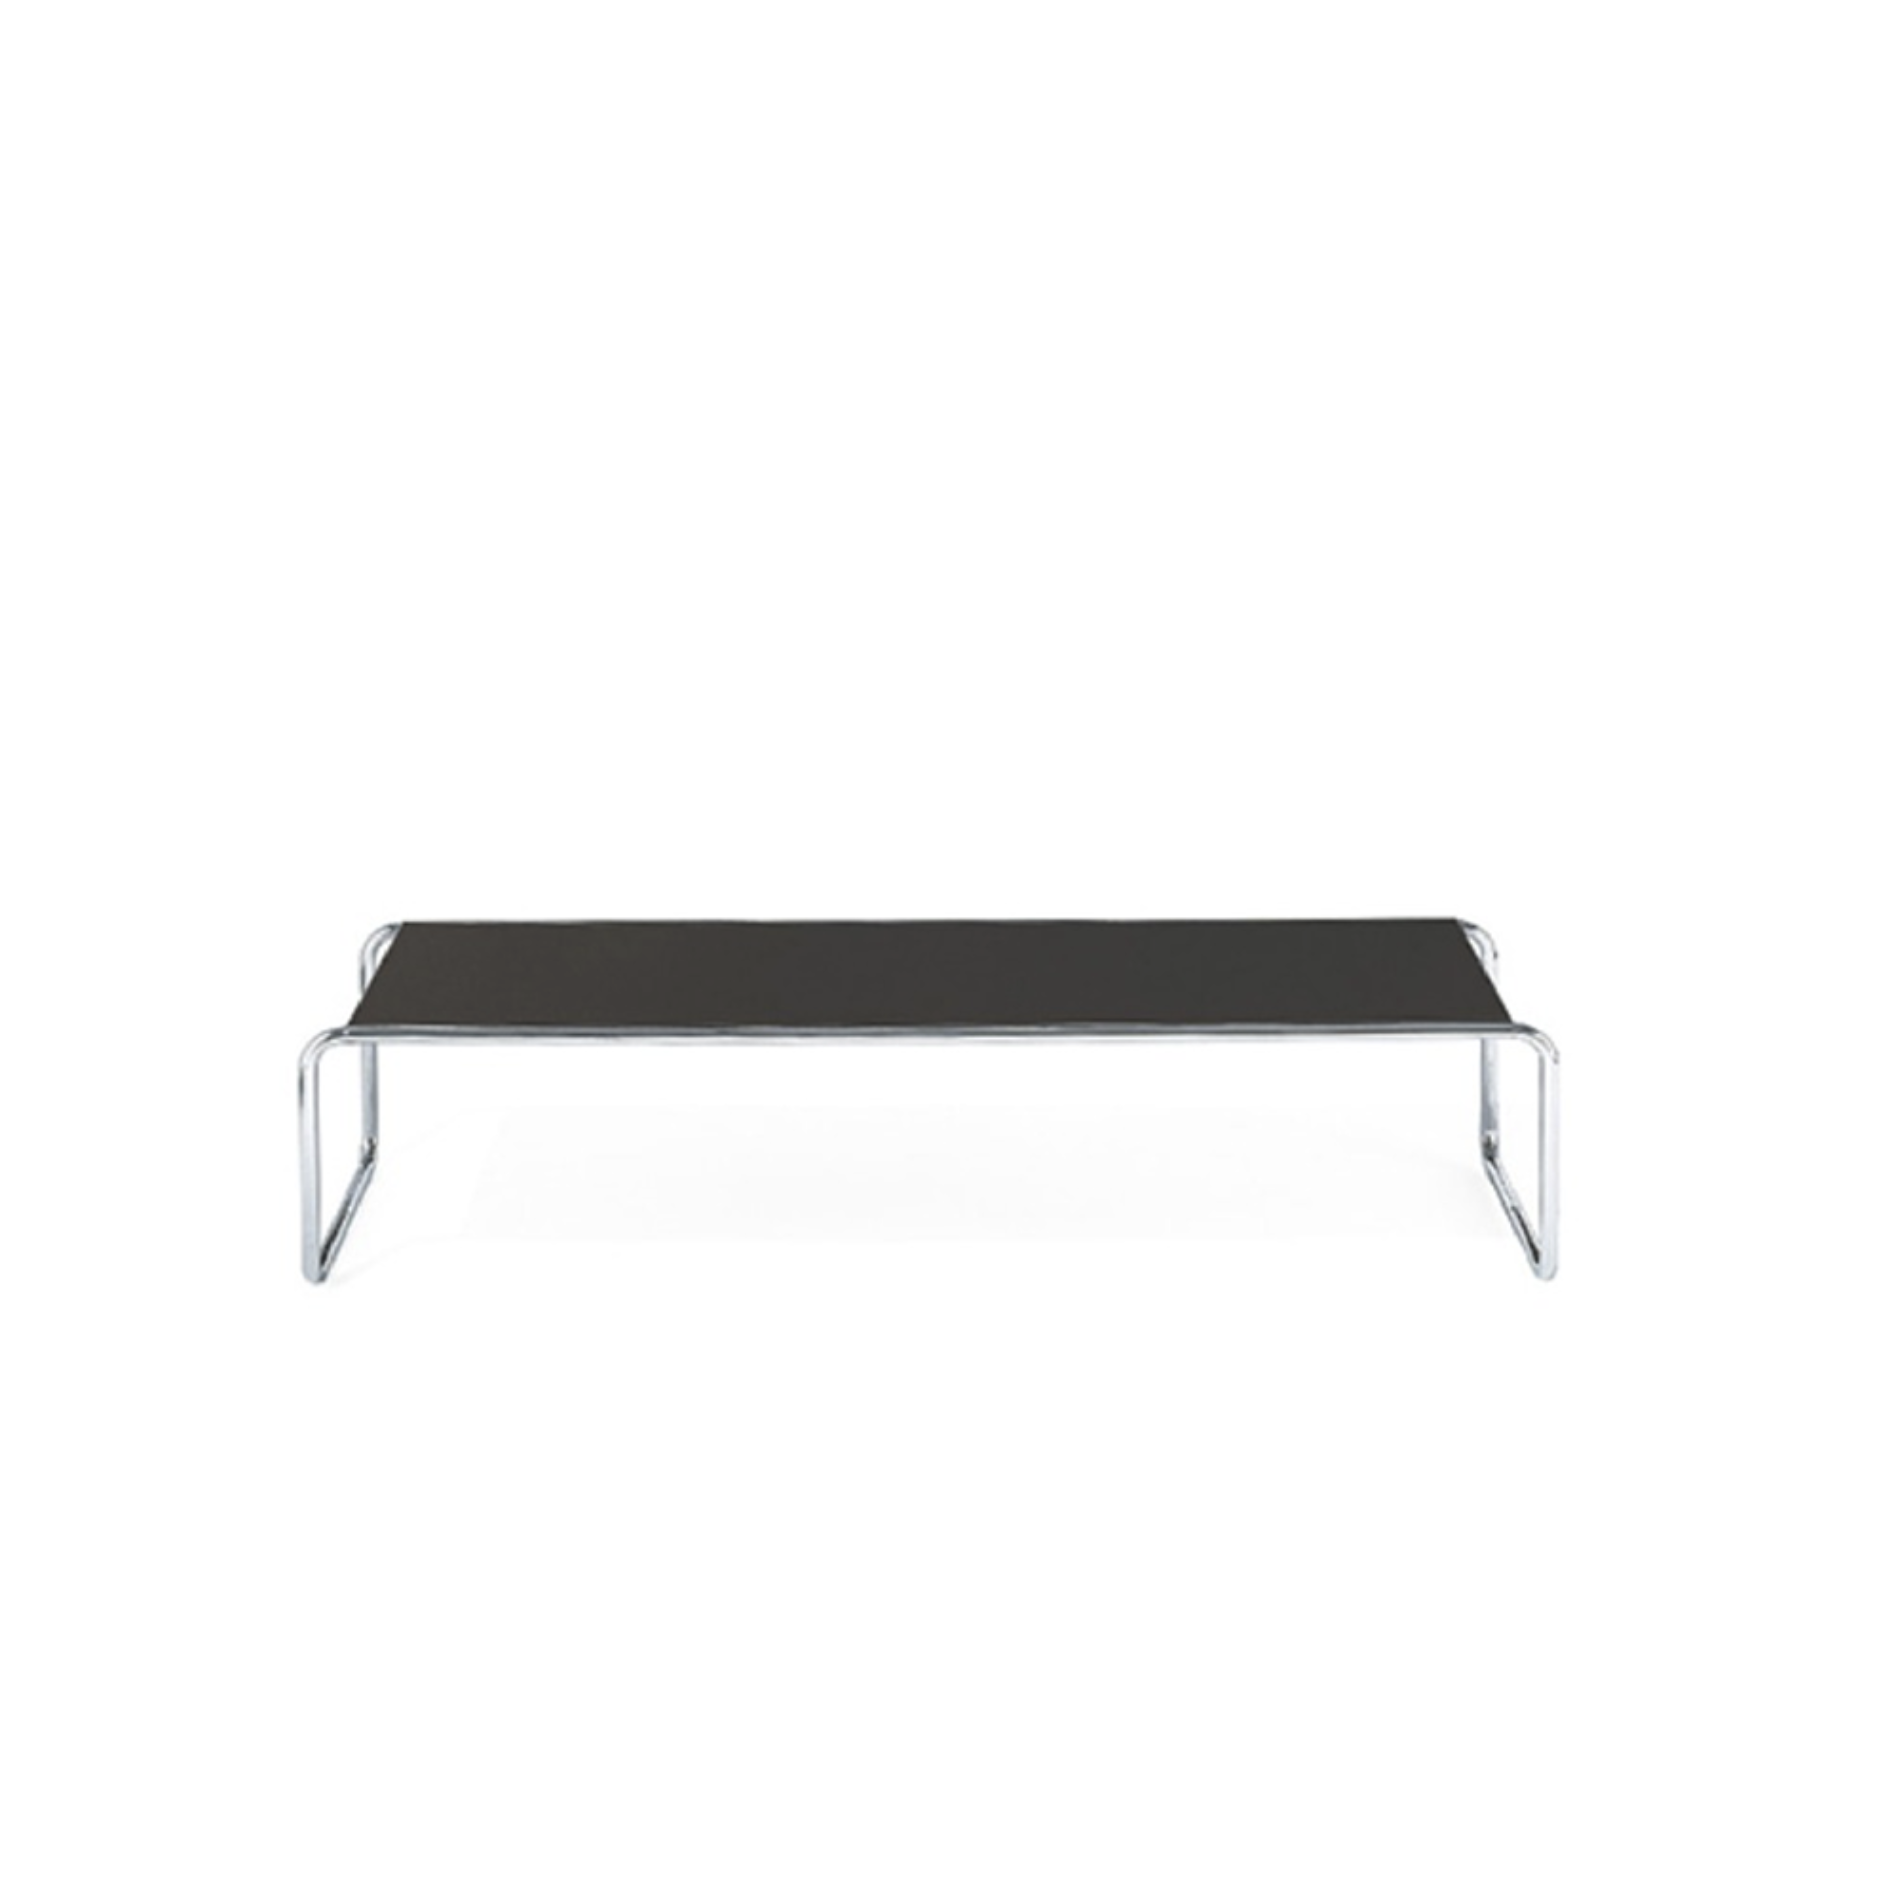 TECTA K1C Oblique Couch Table - Black 125Cm (DP)